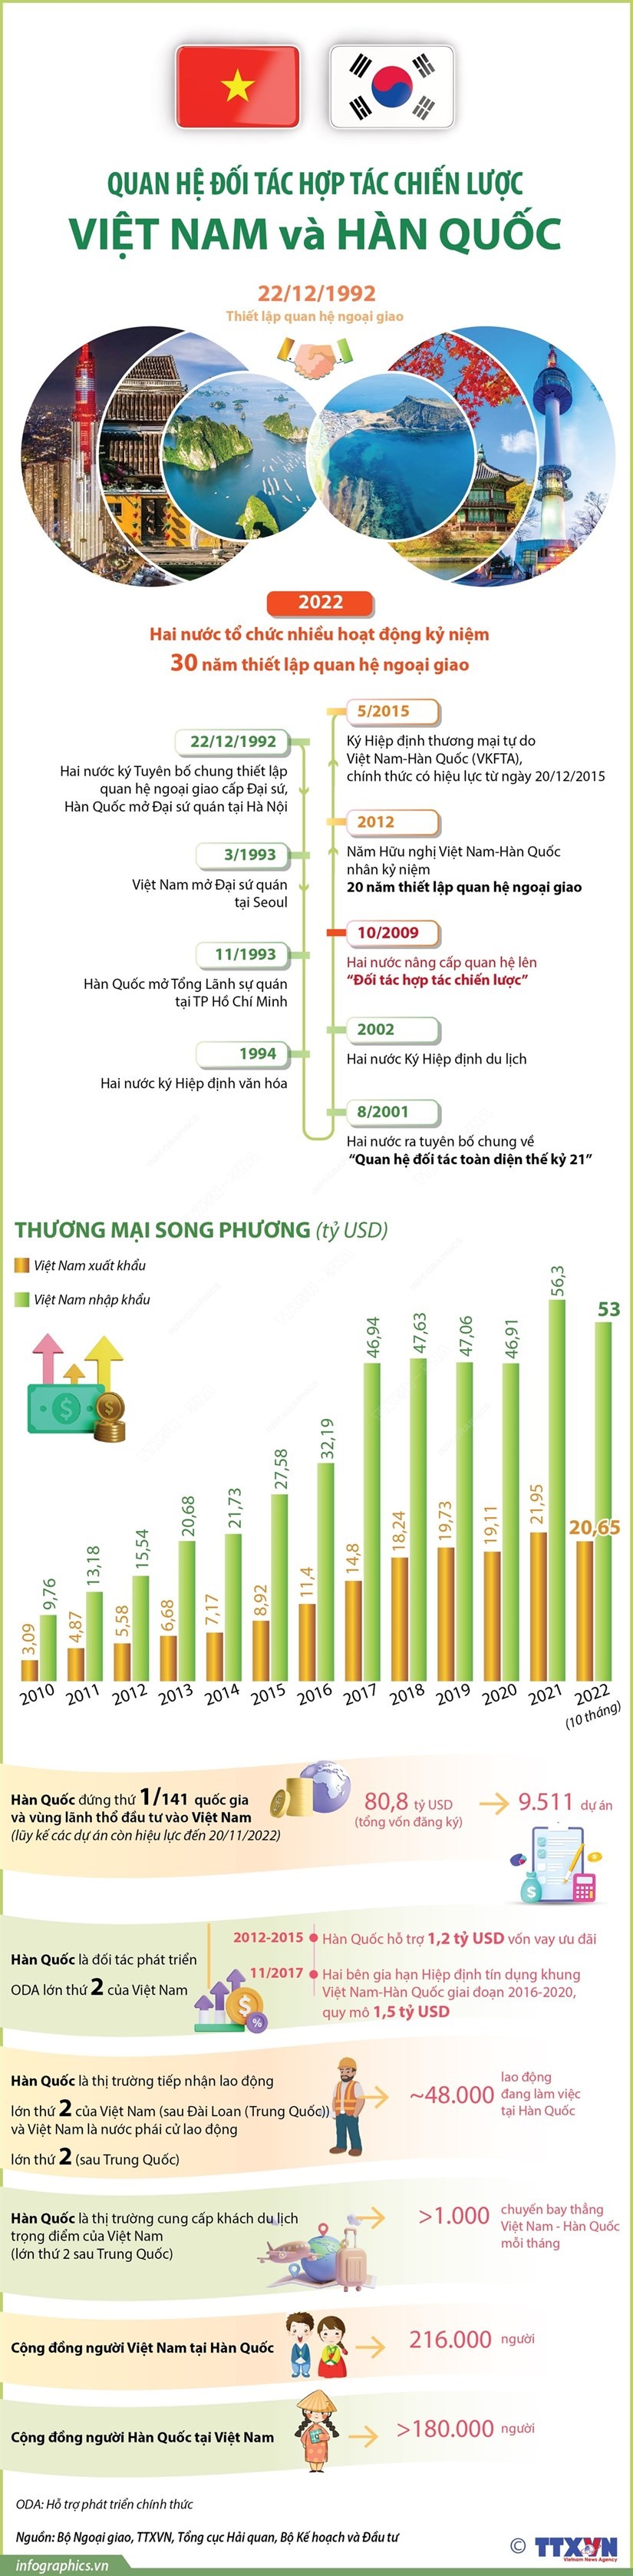 [Infographics] Quan hệ đối tác hợp tác chiến lược Việt Nam-Hàn Quốc | Chính trị | Vietnam+ (VietnamPlus)